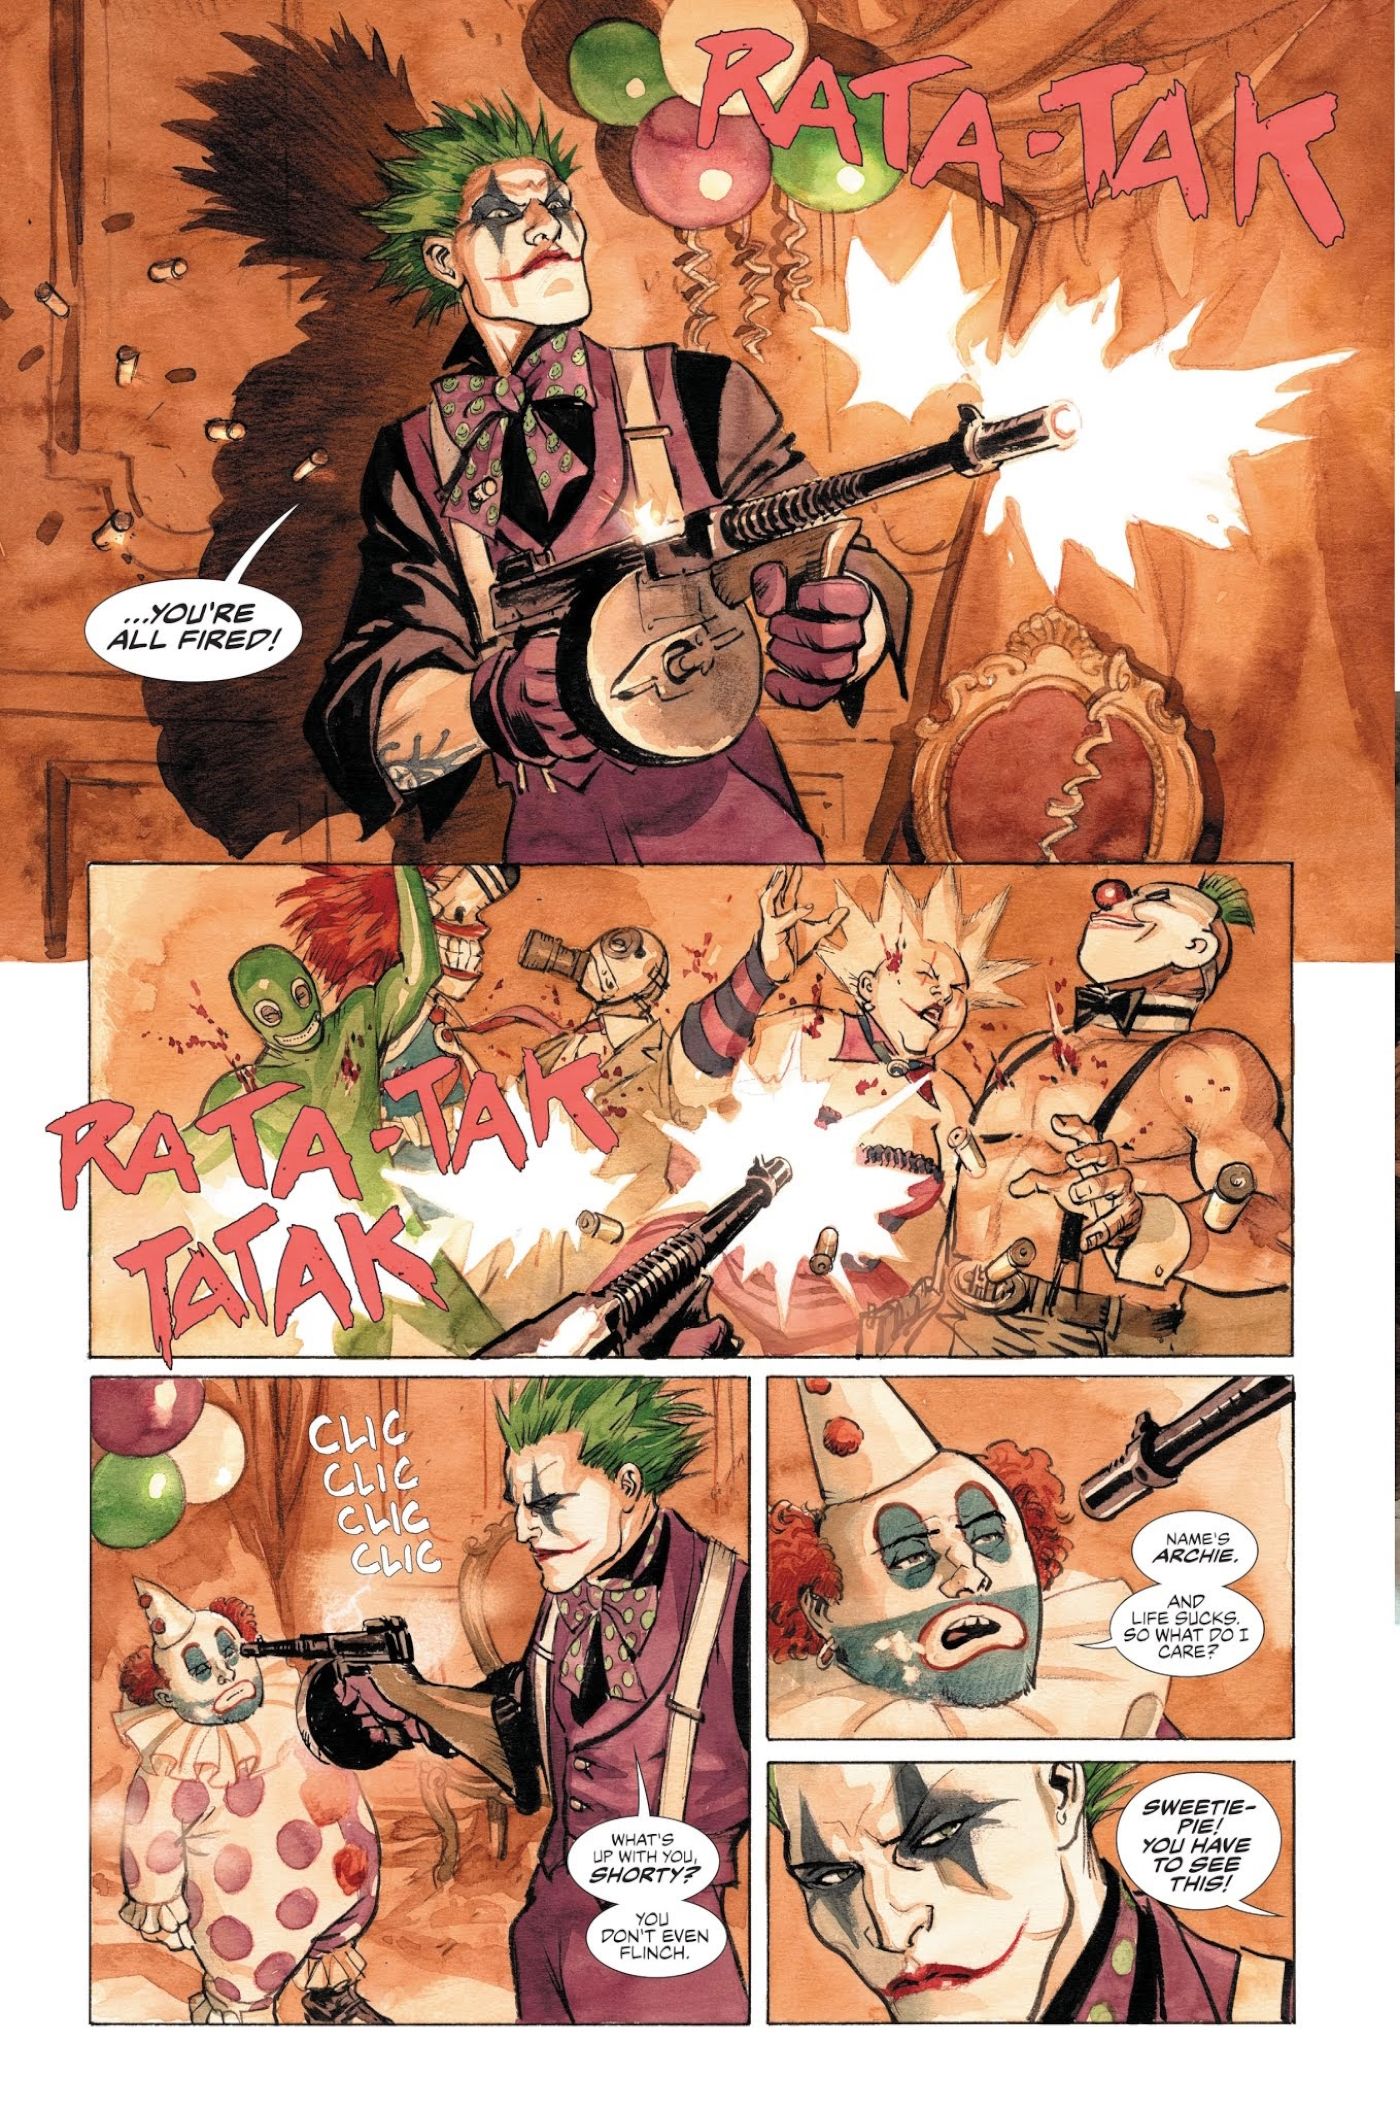 Joker’s Best Sidekick is The One Every Comic Book Fan Has Forgotten